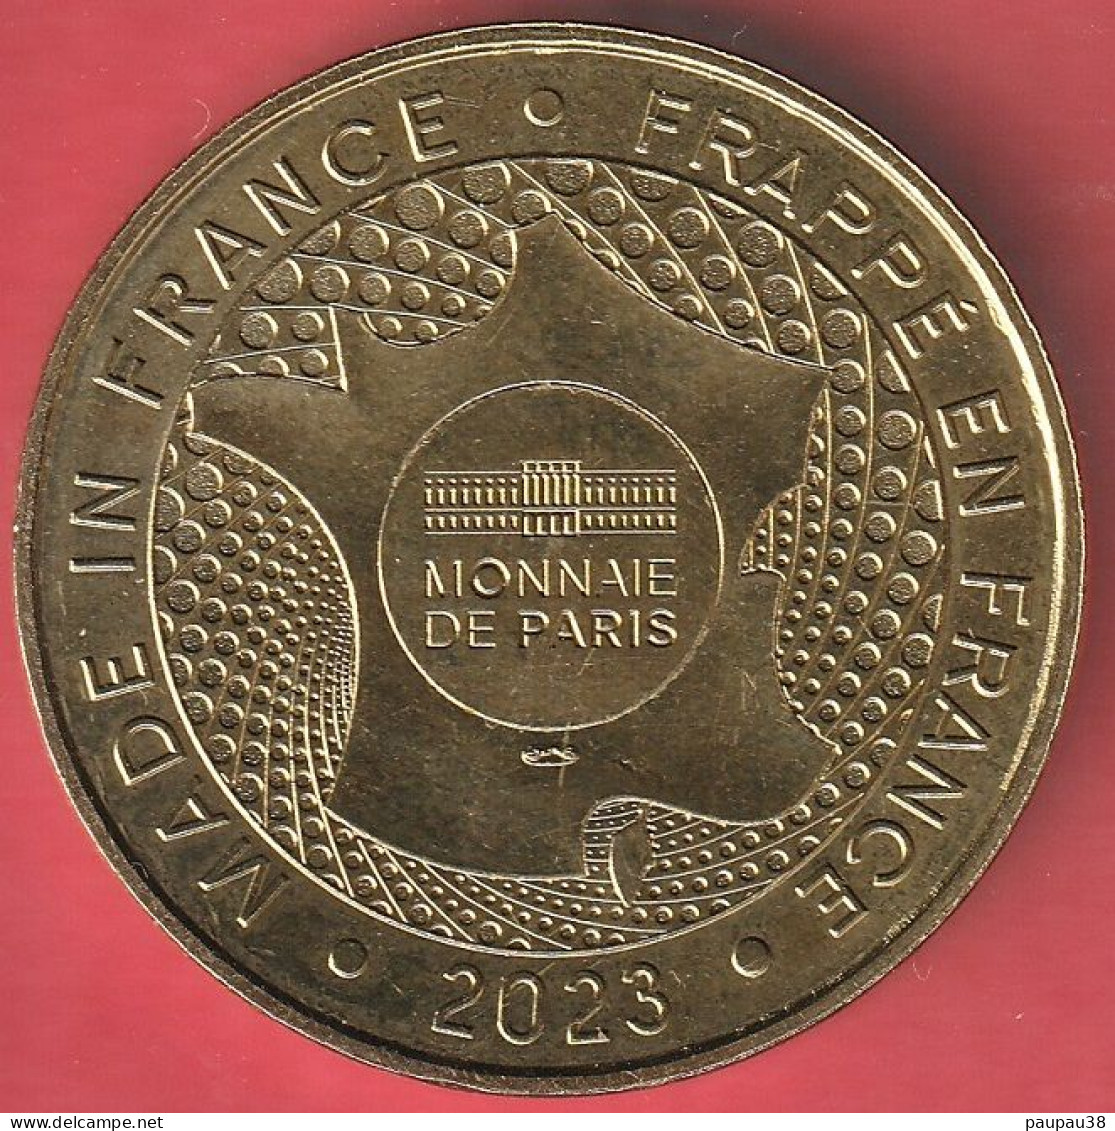 MONNAIE DE PARIS 2023 - 30 NÎMES Tour Magne 3, François Traucat - 2023